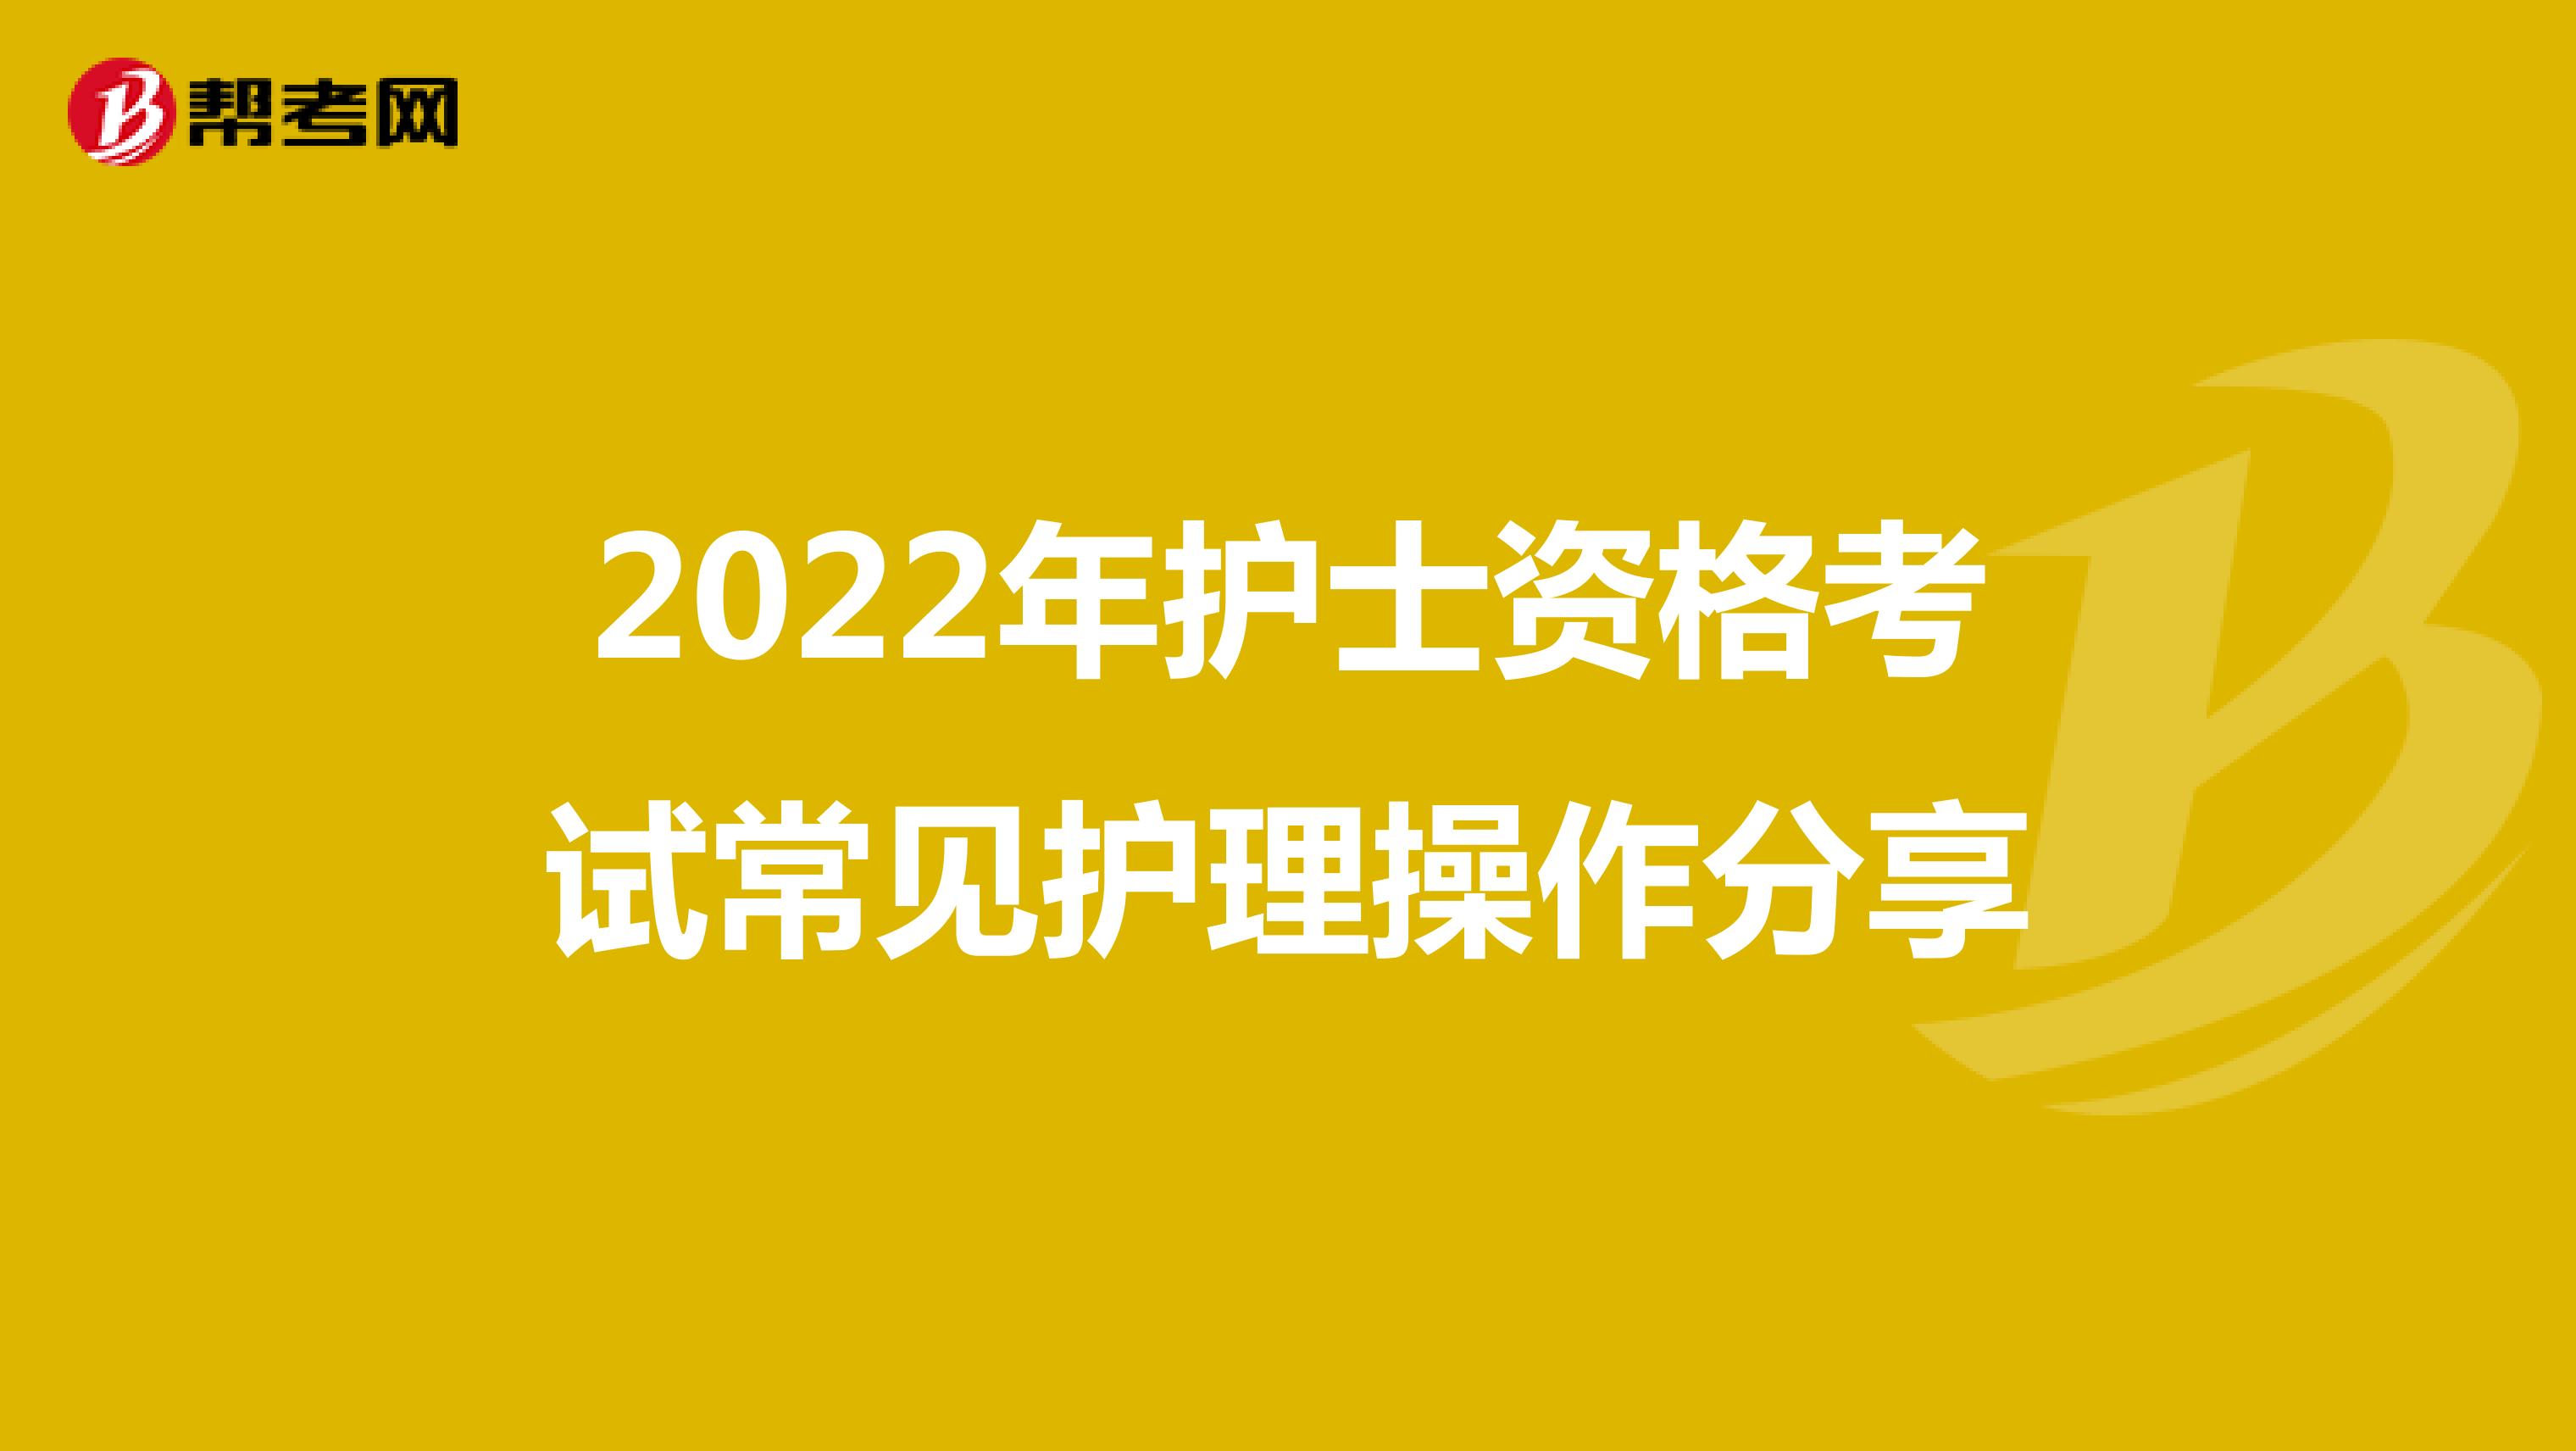 2022年护士资格考试常见护理操作分享